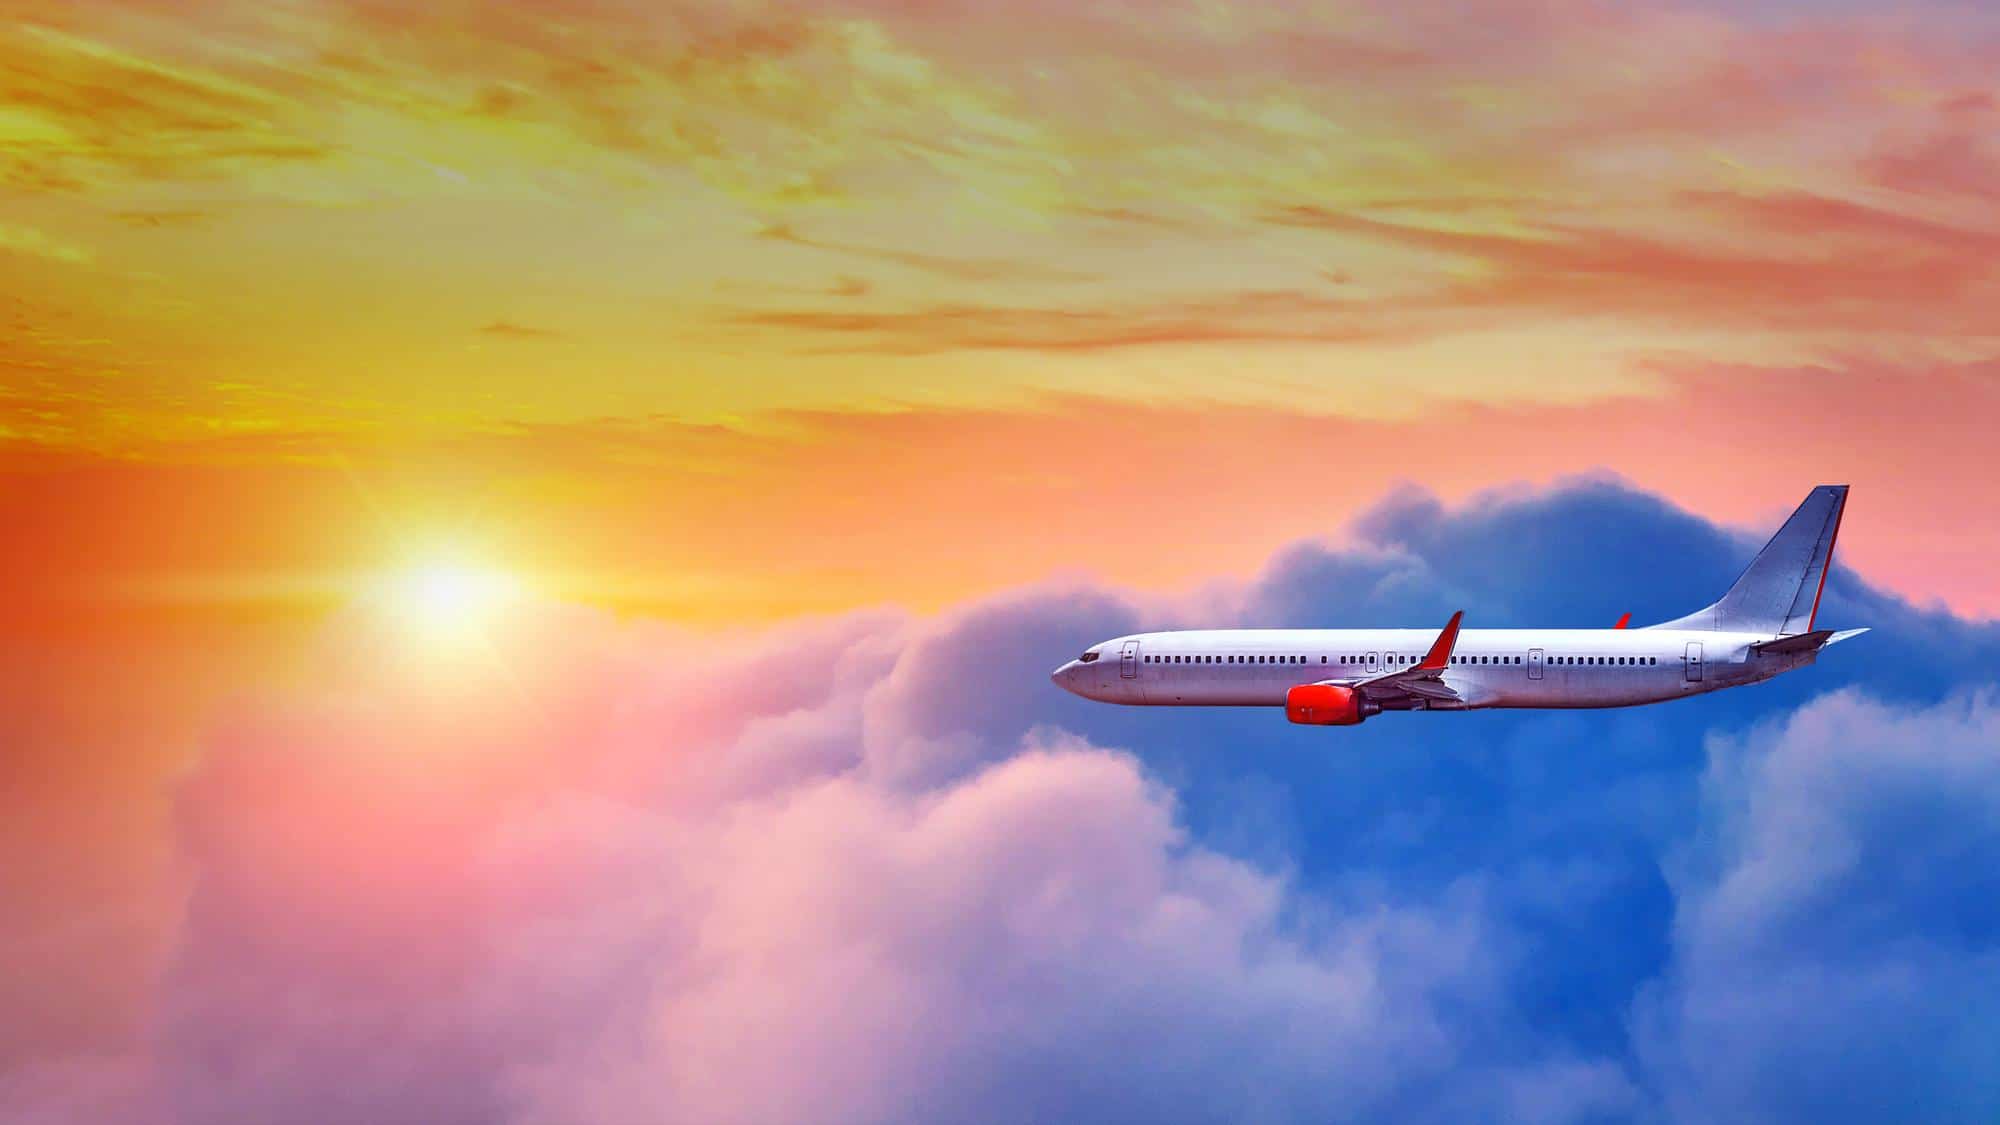 טיסה מישראל לתאילנד באוגוסט - בואו לחקור את תאילנד האקזוטית! מטוס חוצה את העננים בשקיעה